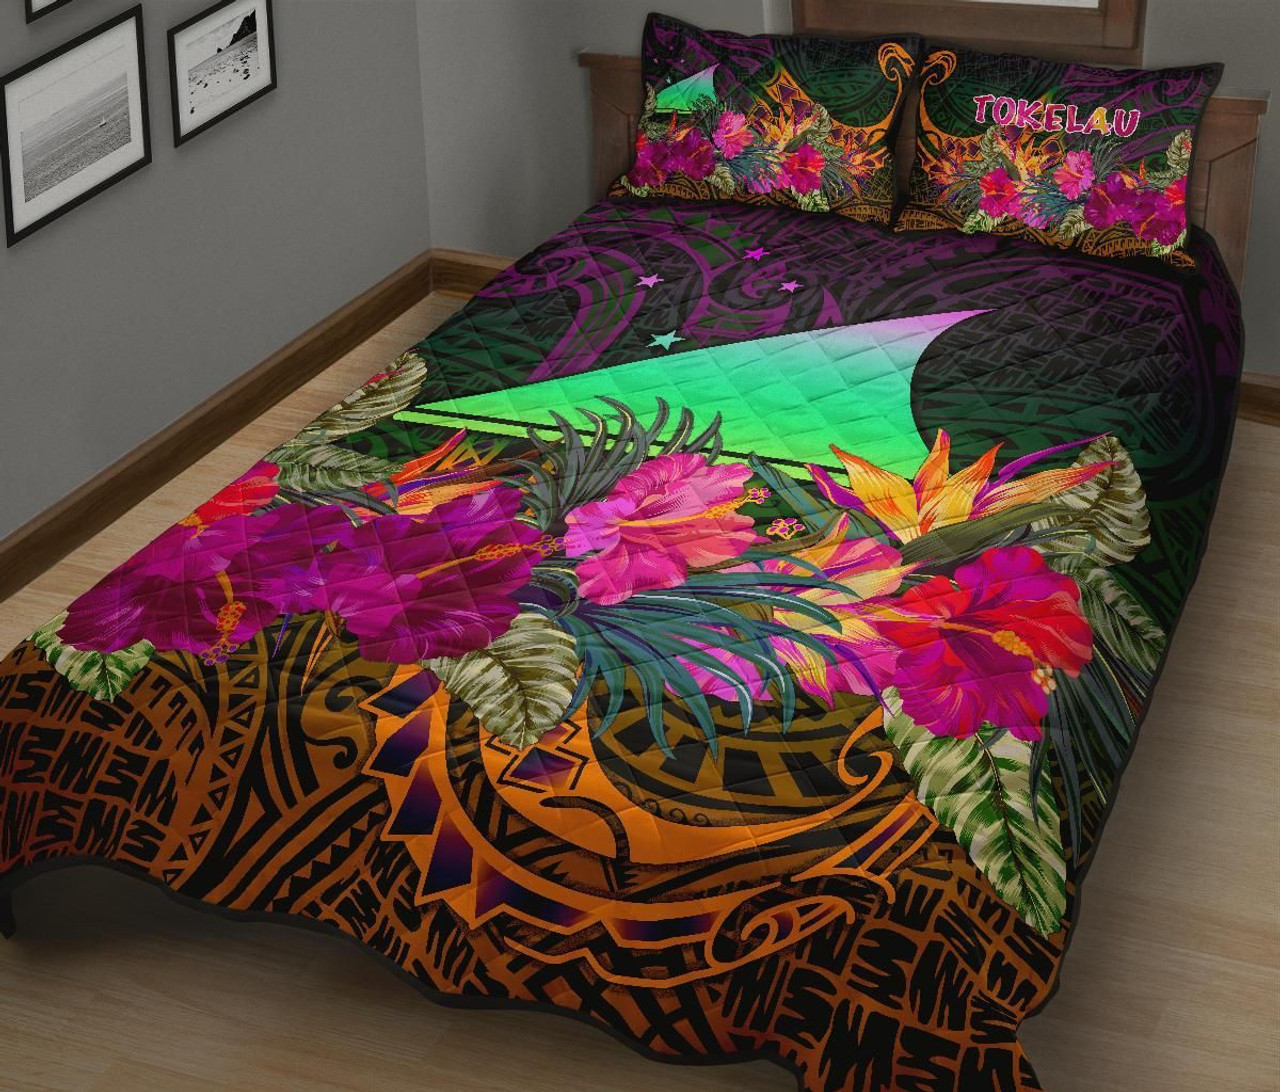 Tokelau Quilt Bed Set - Summer Hibiscus 2